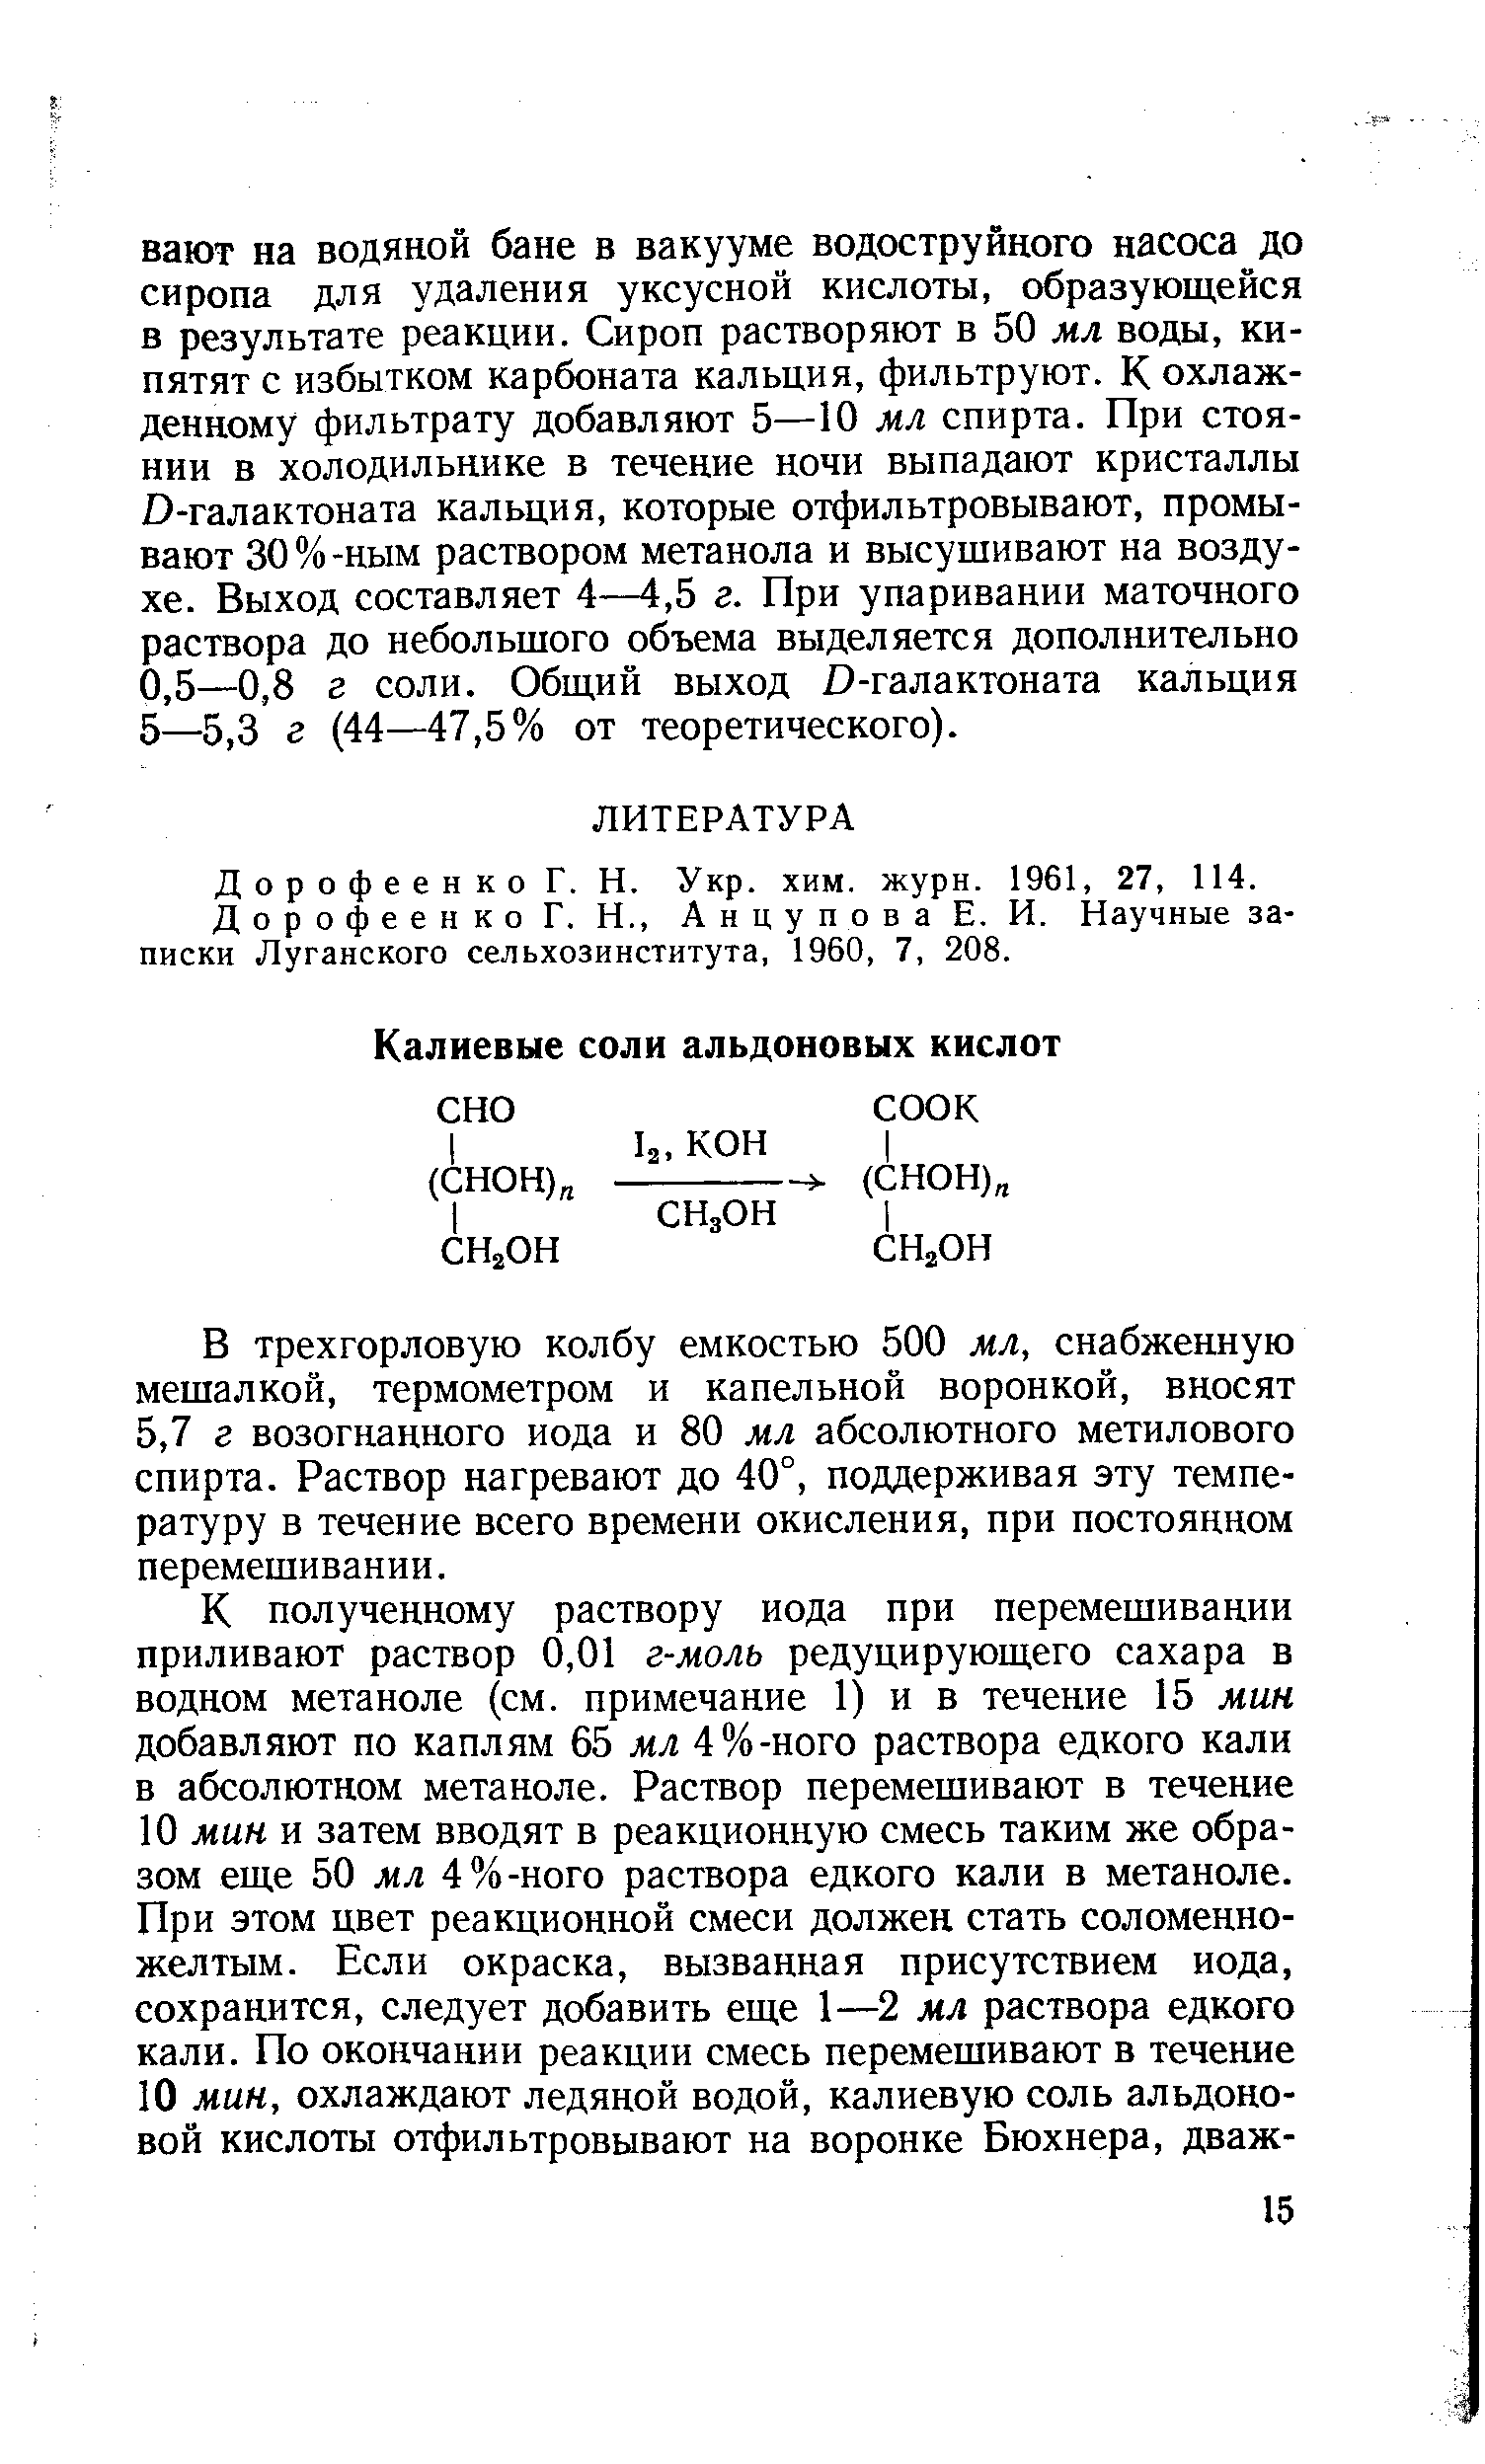 Дорофеенко Г. Н. Укр. хим. журн. 1961, 27, 114.